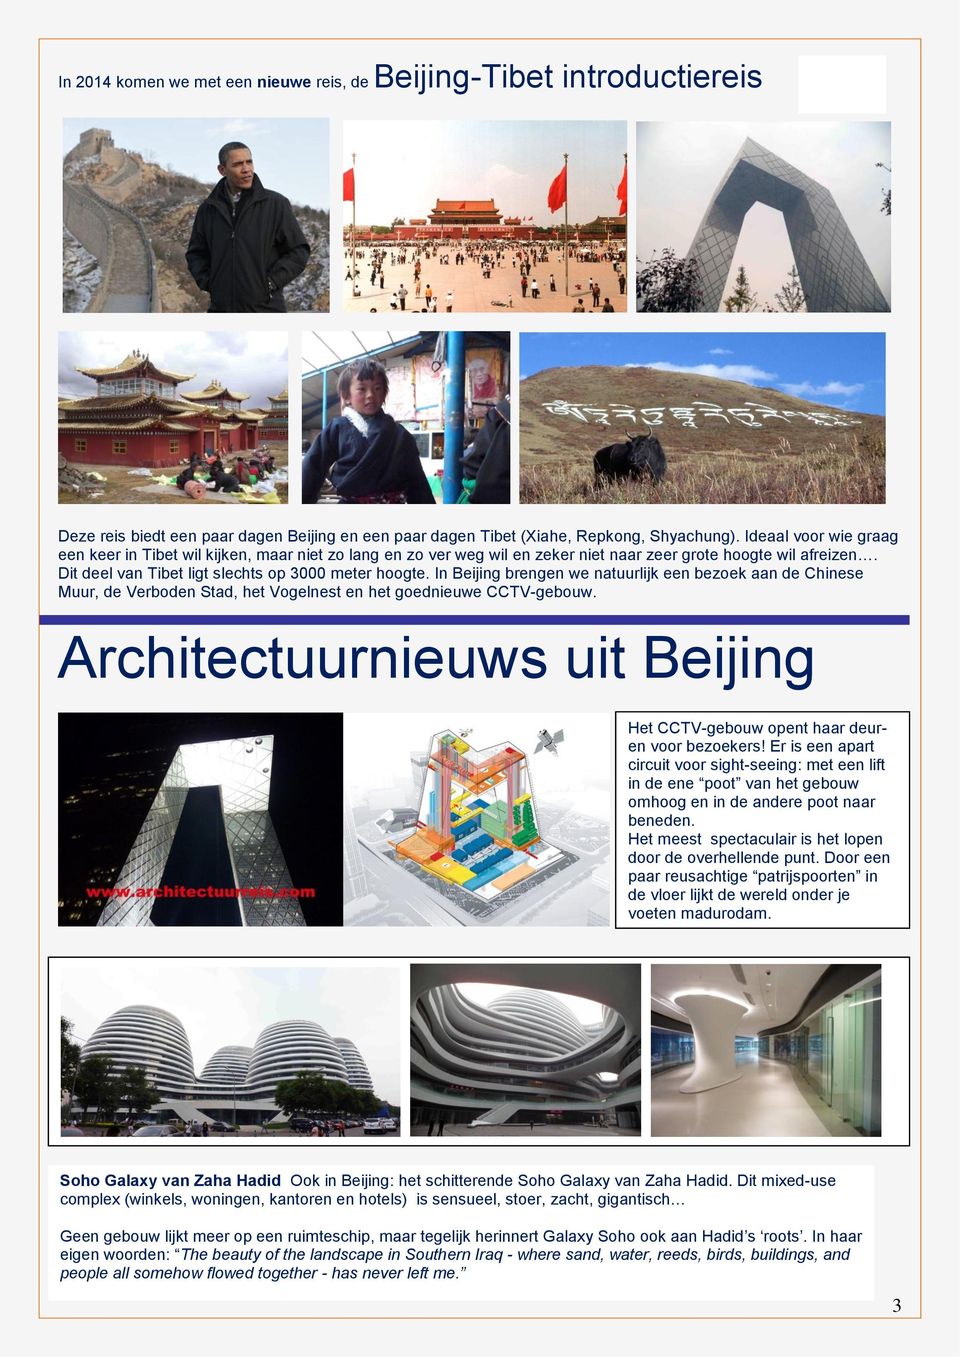 In Beijing brengen we natuurlijk een bezoek aan de Chinese Muur, de Verboden Stad, het Vogelnest en het goednieuwe CCTV-gebouw.